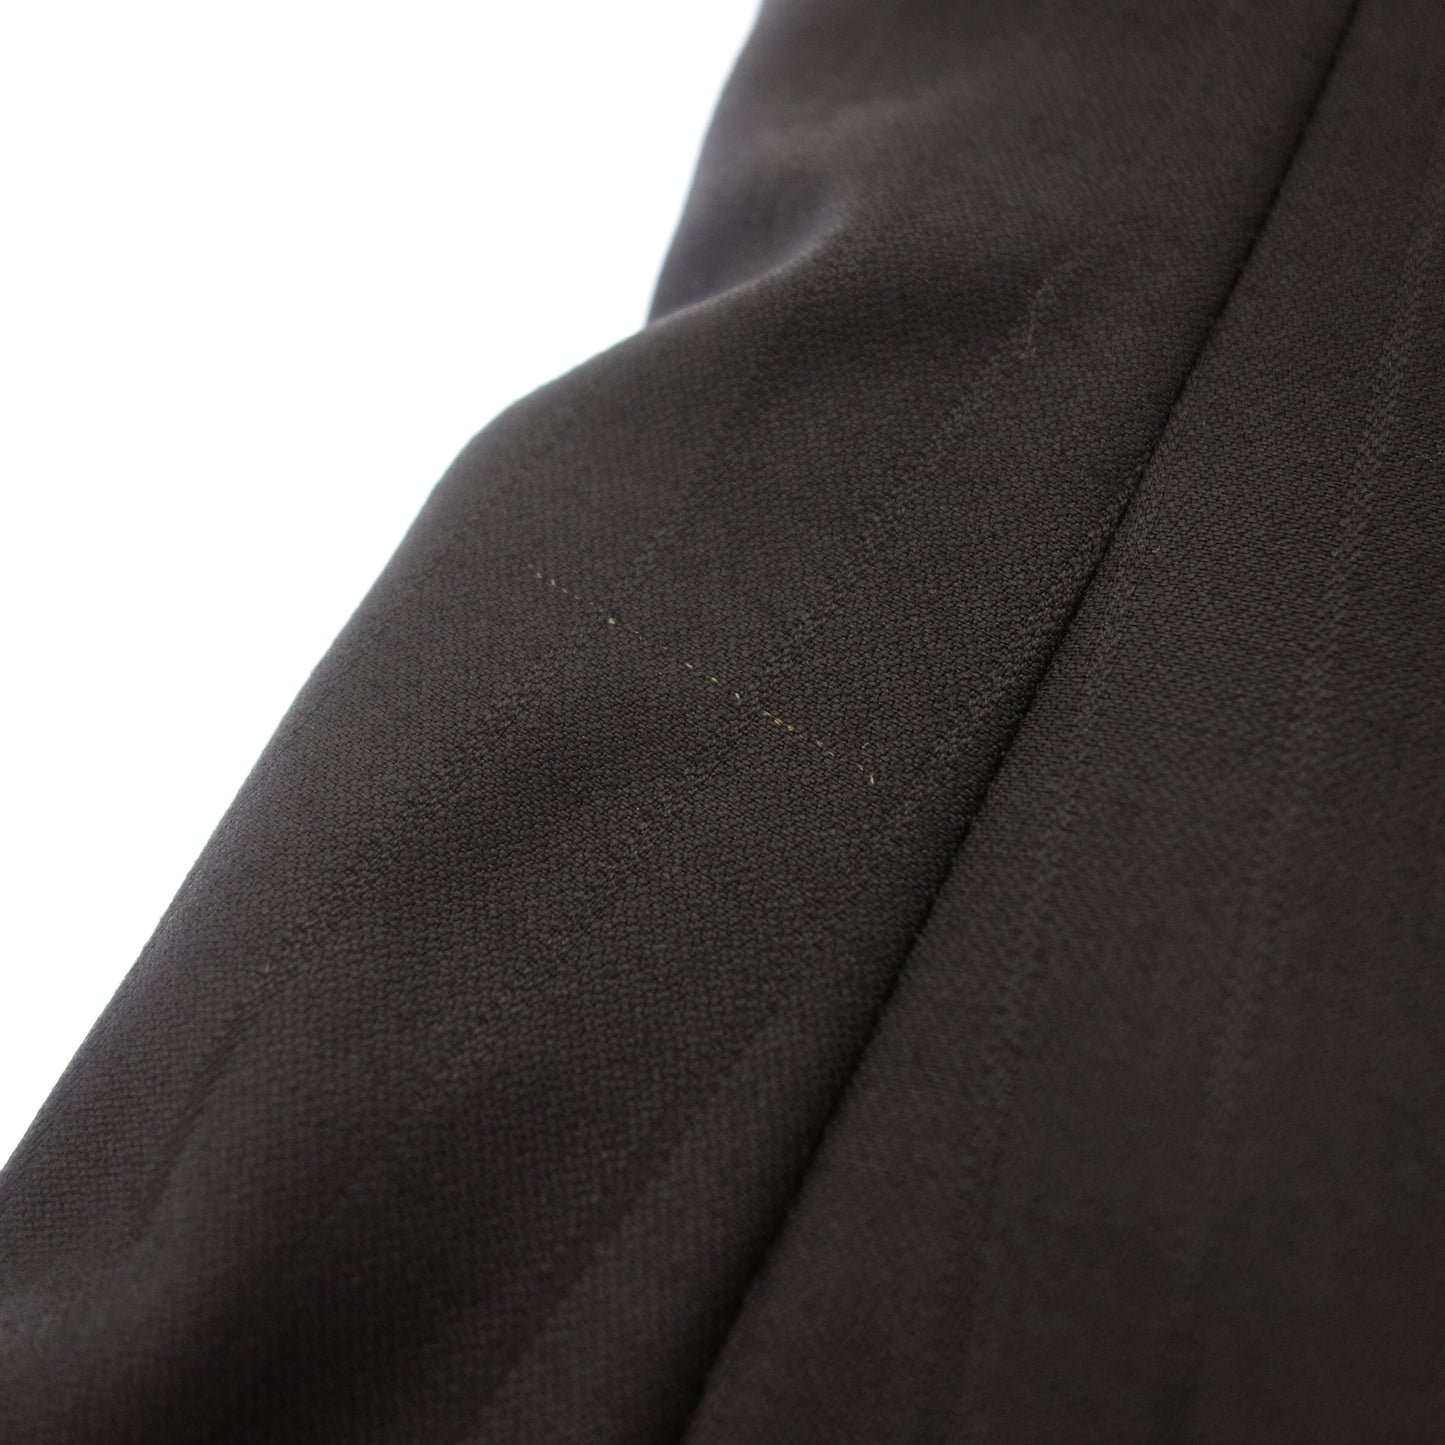 品相良好◆乔治阿玛尼西装套装条纹黑色 46 号男式 GIORGIO ARMANI [AFA21] 